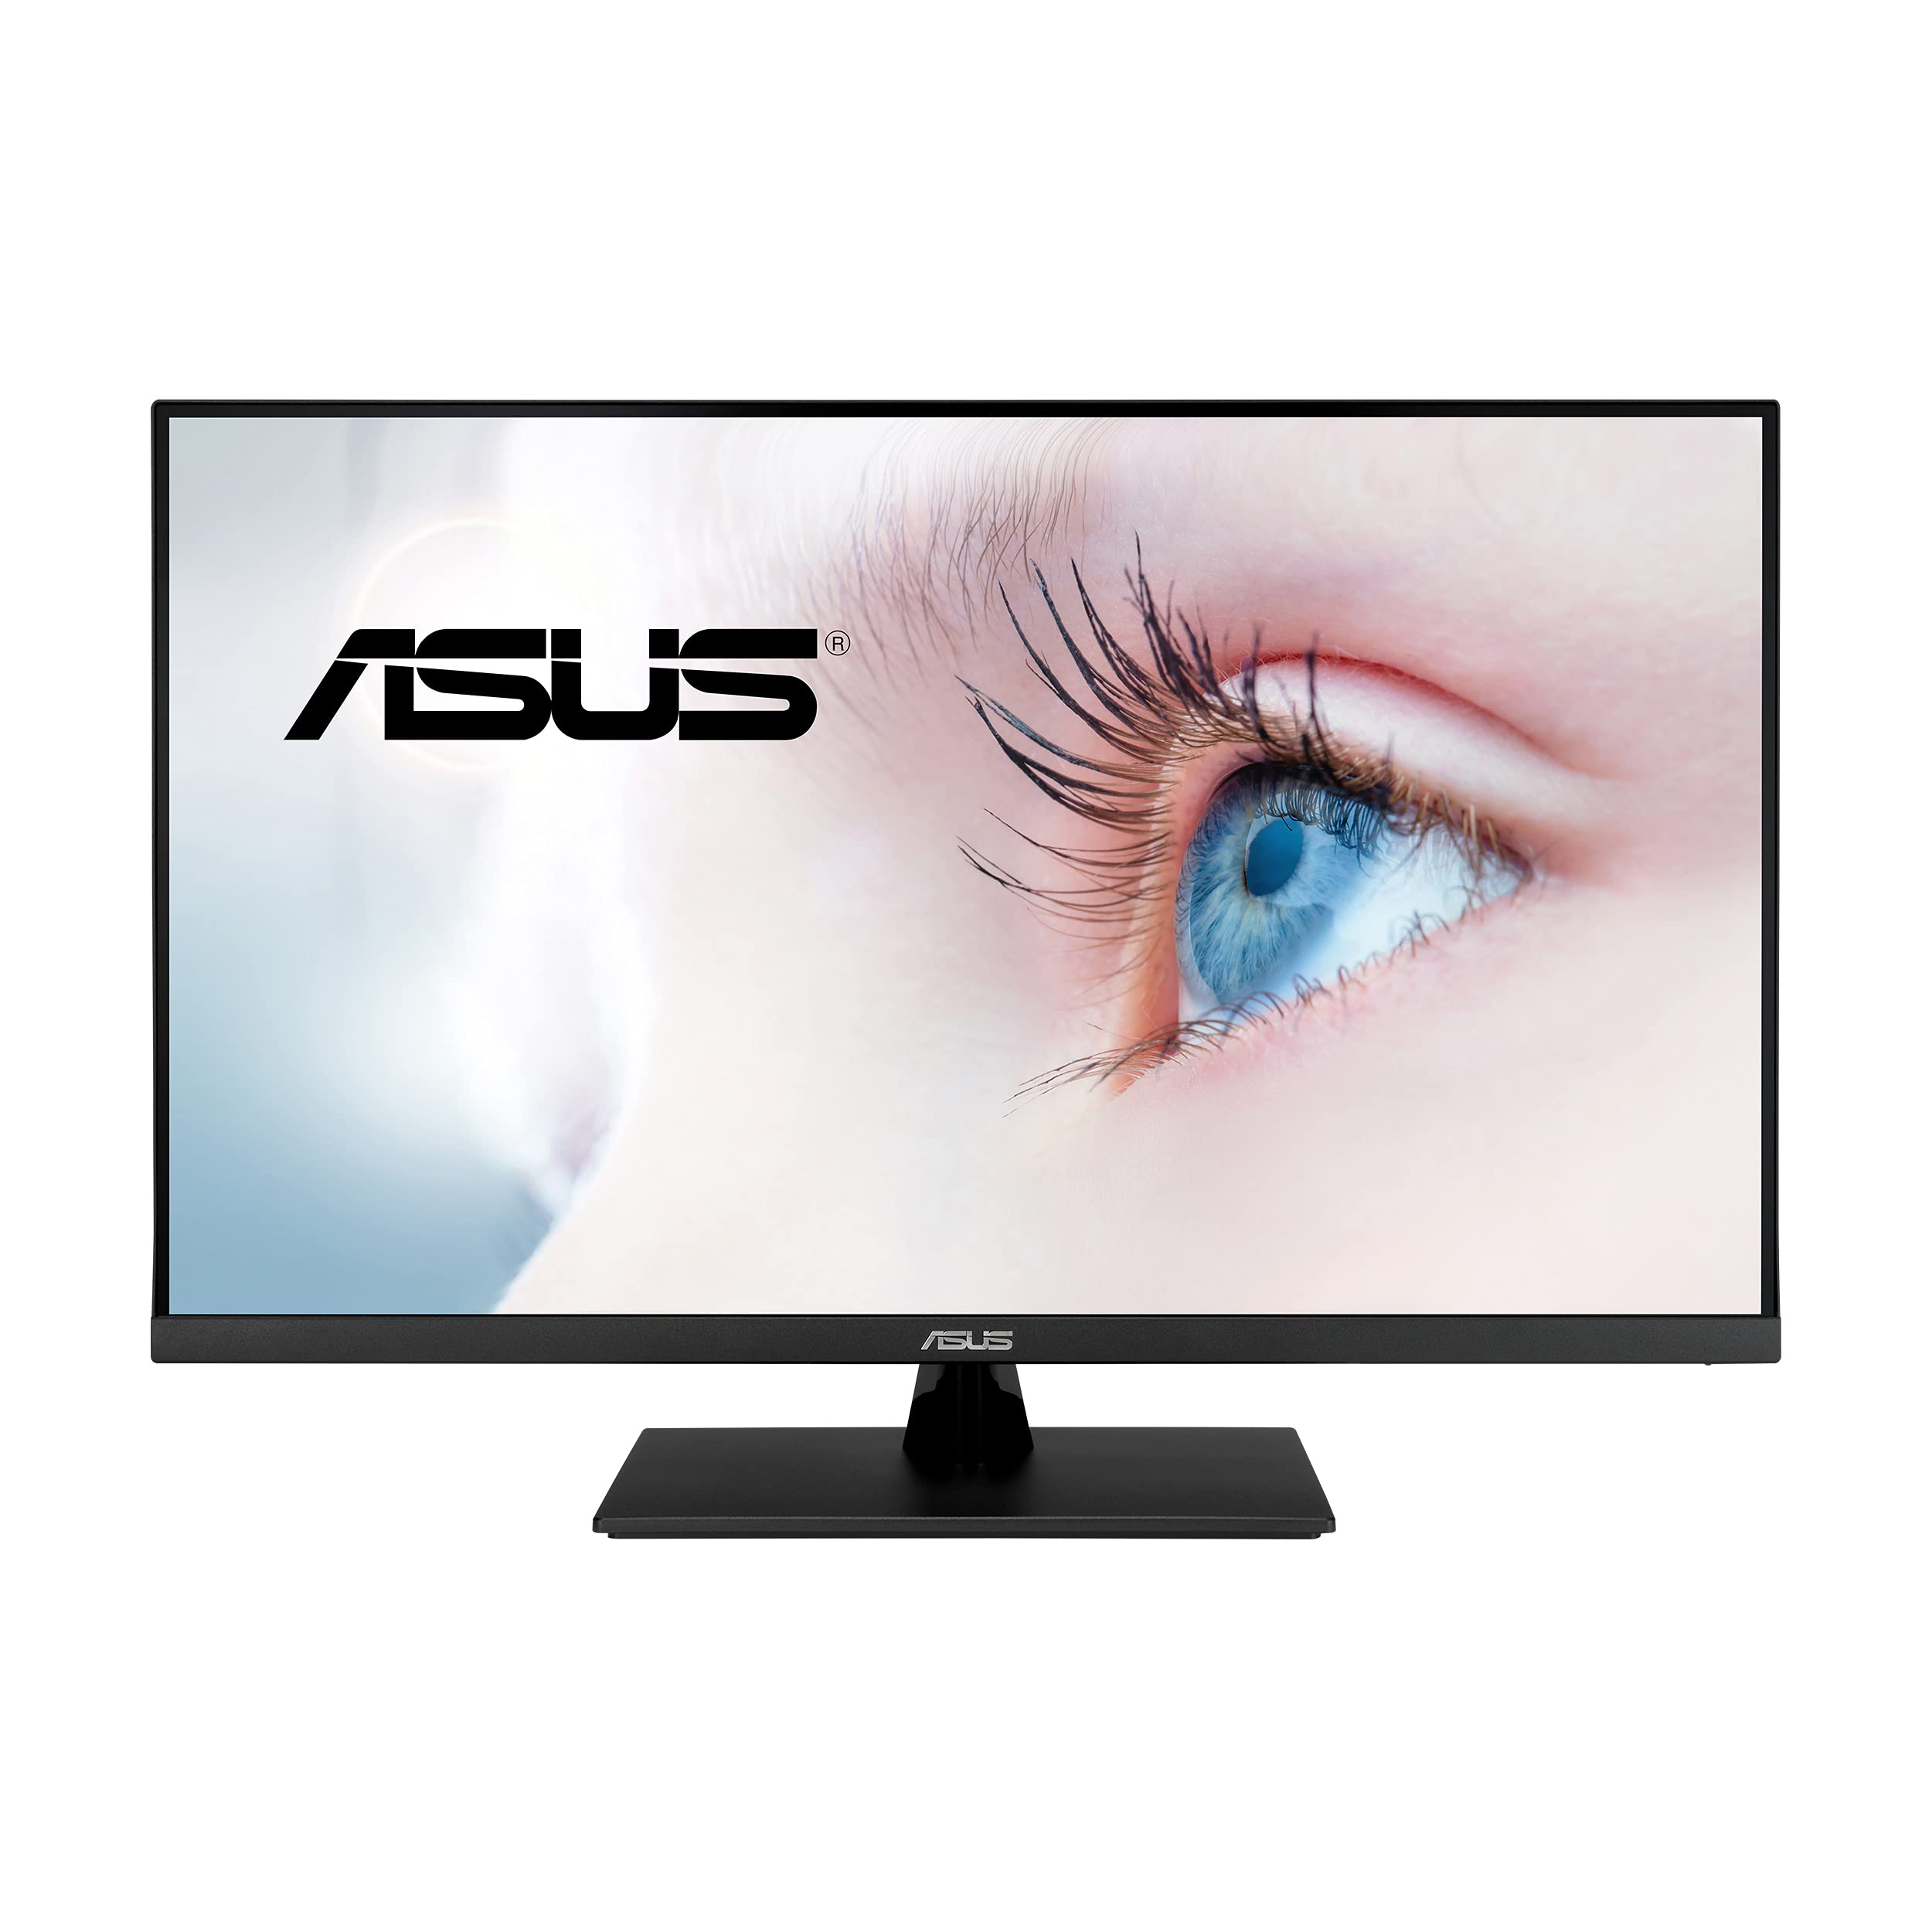  Asus 31.5 英寸 2K 显示器 (VP32AQ) - WQHD (2560 x 1440)、IPS、100% sRGB、HDR10、75Hz、扬声器、自适应同步/自由同步、低蓝光、护眼、VESA 安装、无框、DisplayPort、HDM...